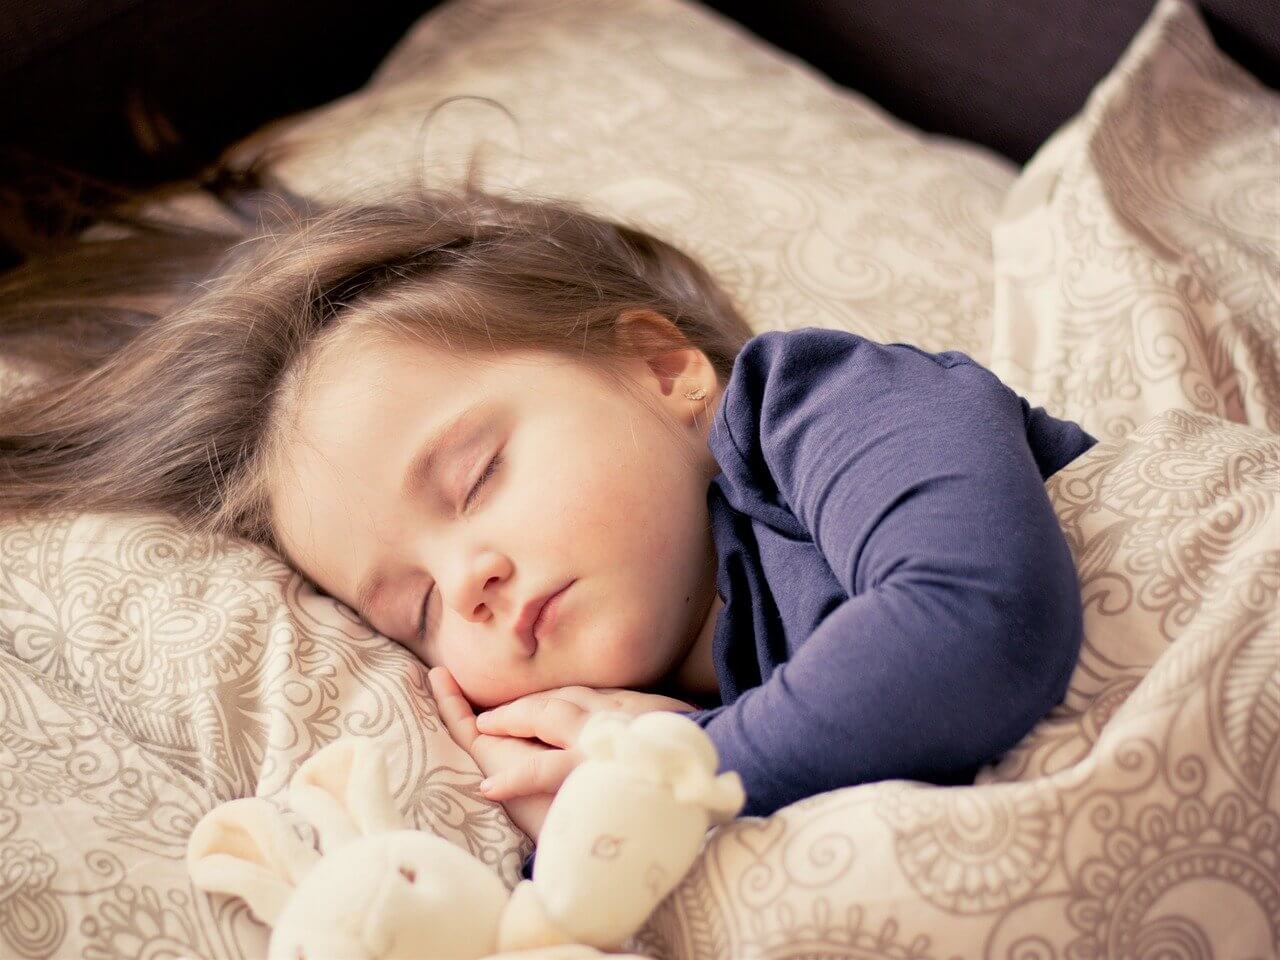 Małe dziecko śpiące bokiem na poduszce z pluszową zabawką. Jak sen wpływa na jej mózg?